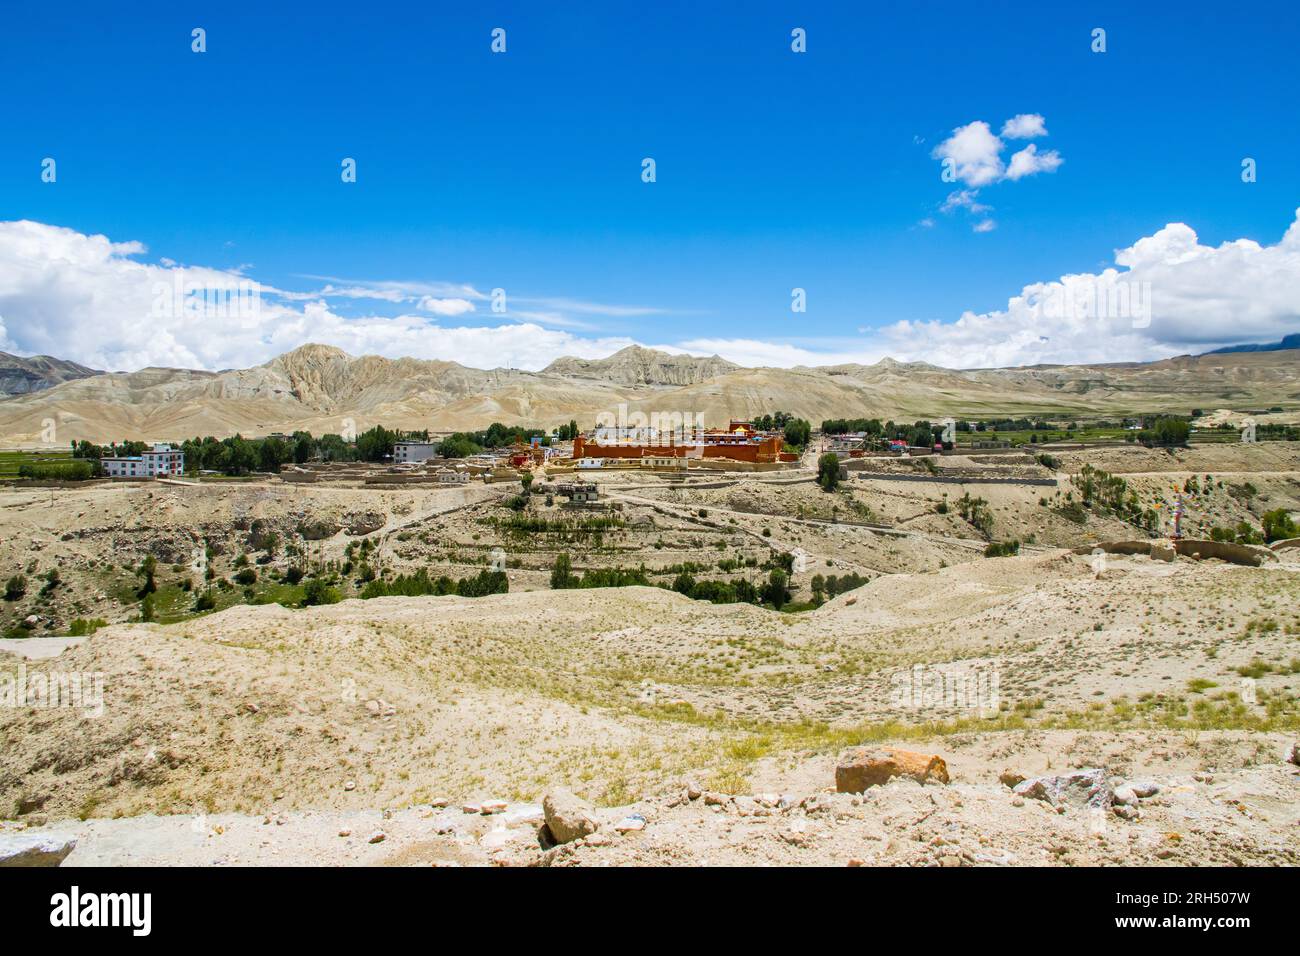 Das verbotene Königreich Lo Manthang mit Kloster, Palast und Dorf in Obermustang von Nepal. Stockfoto